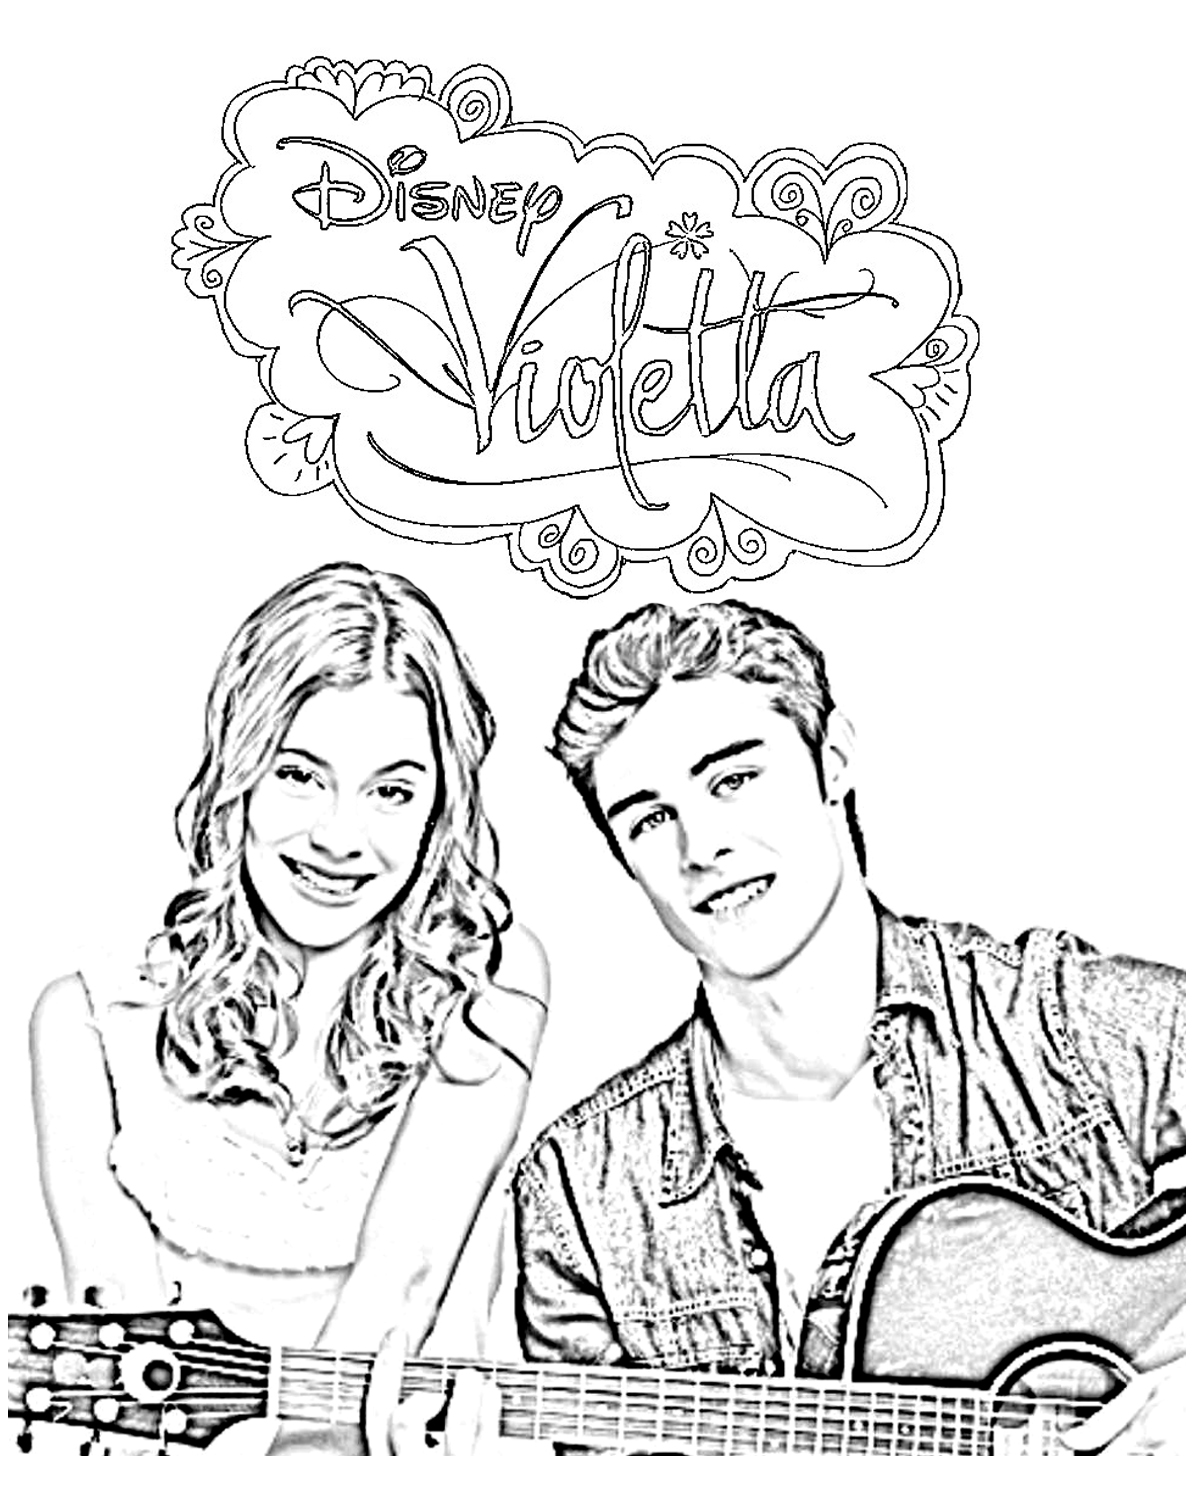 Image Tomas et Violetta avec le logo de la série Disney